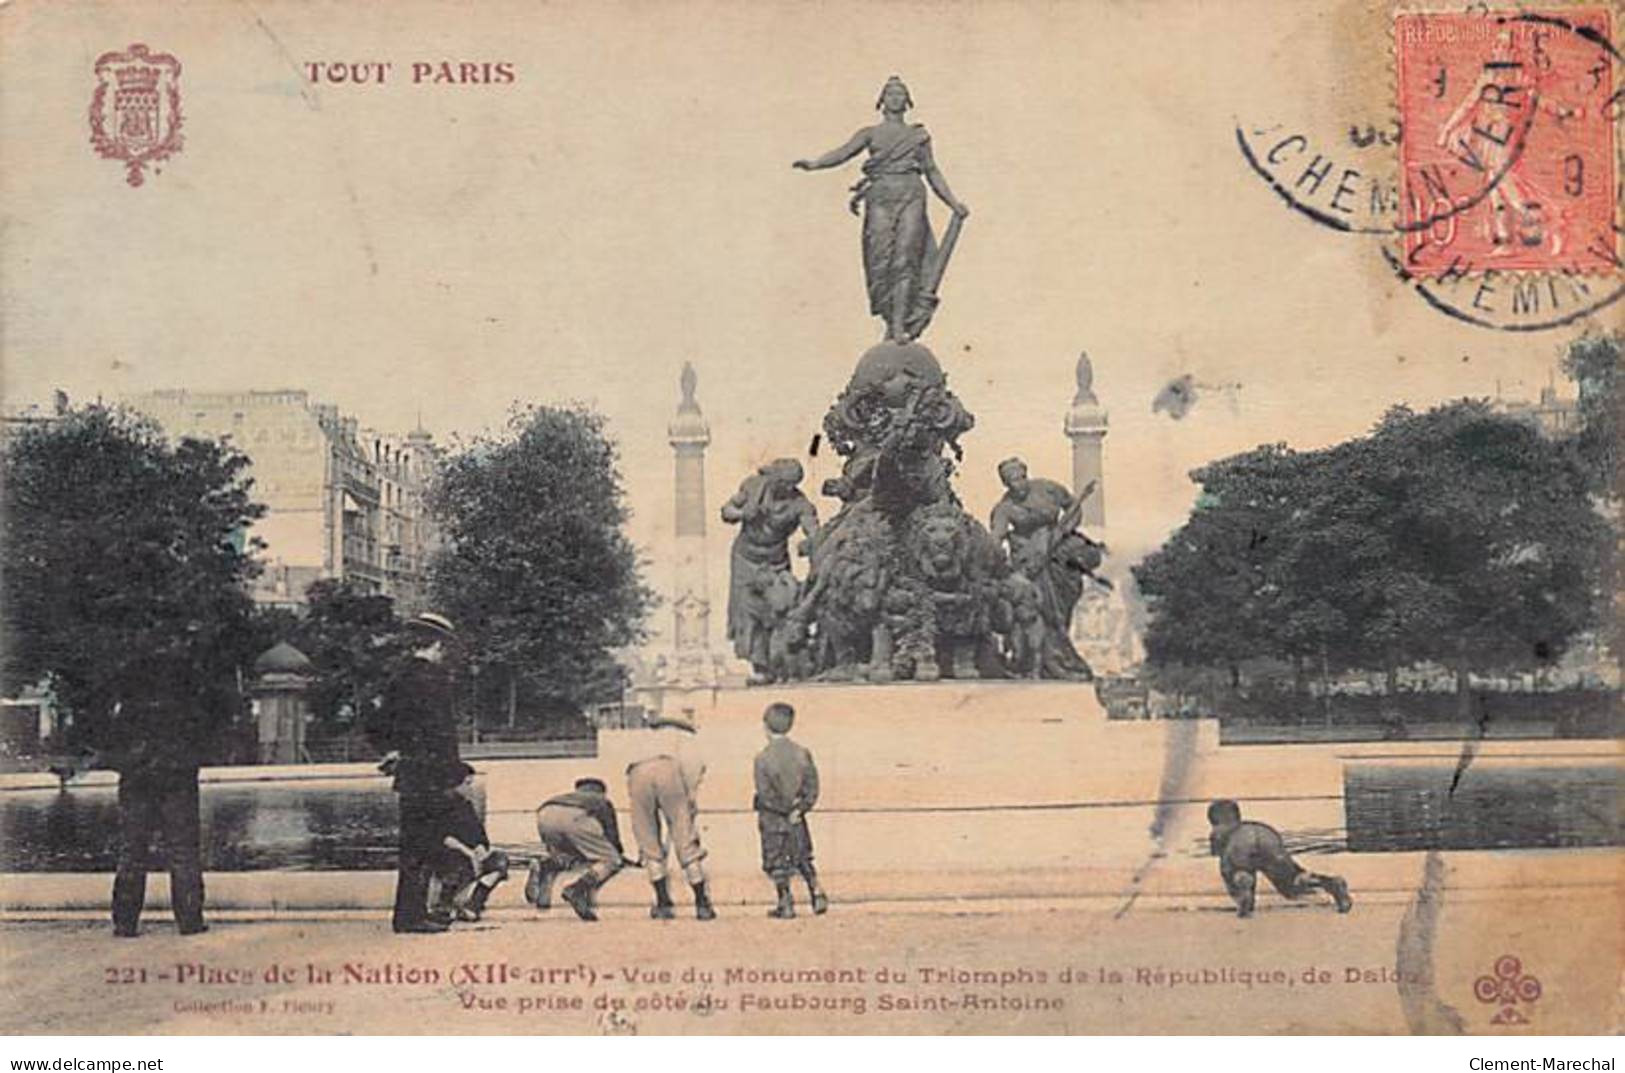 TOUT PARIS - Place De La Nation - F. Fleury - état - Paris (12)